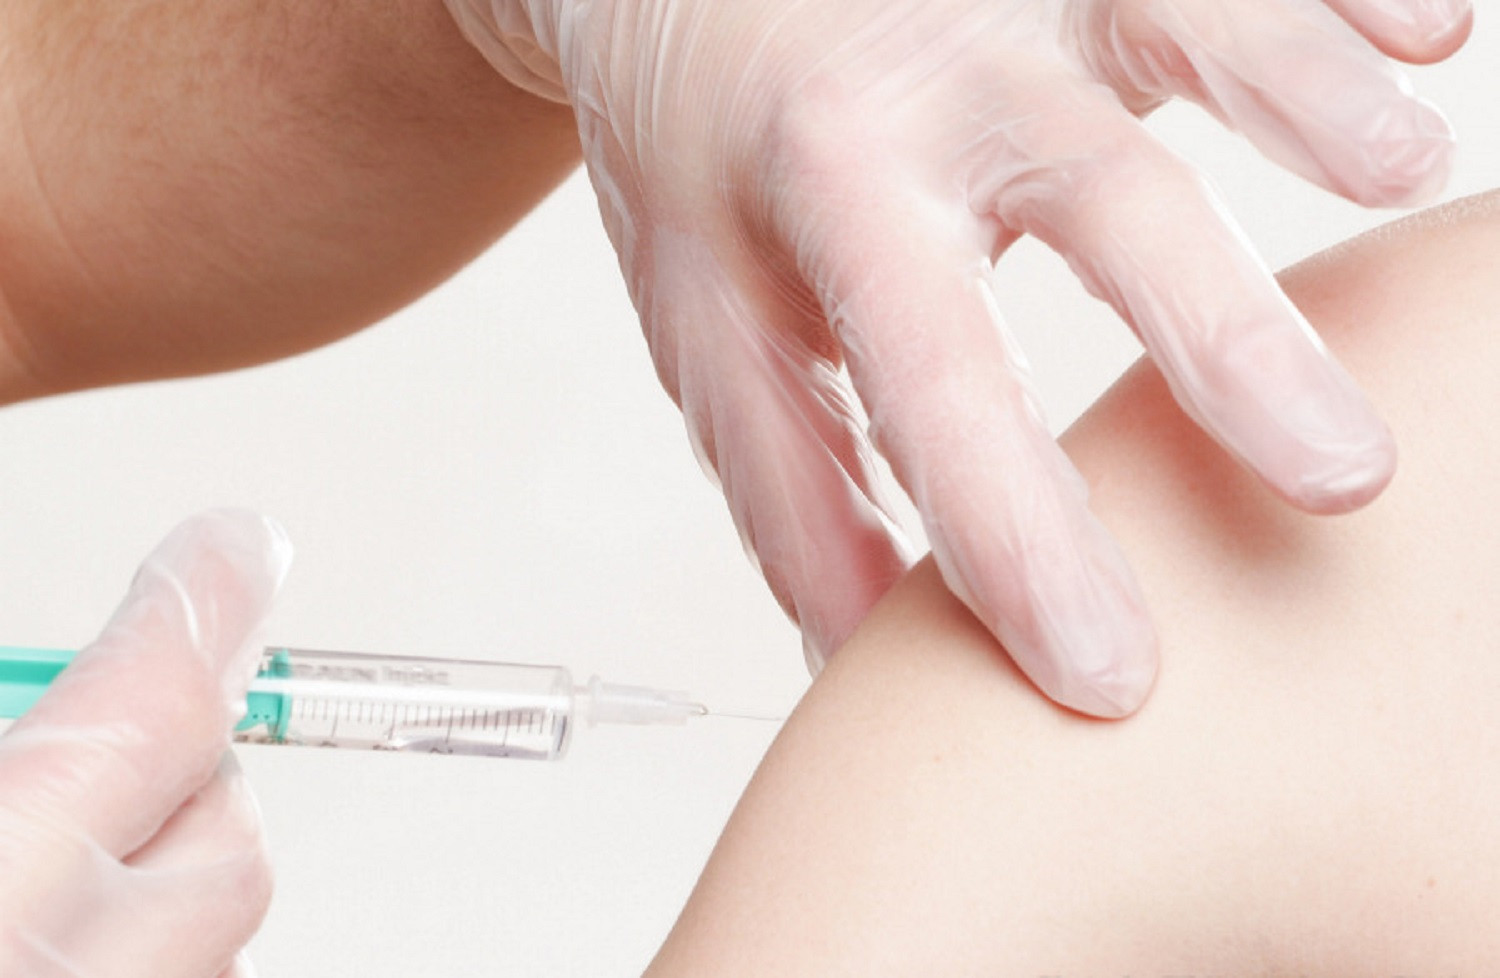 Το εμβόλιο για τη φυματίωση δεν φαίνεται να προστατεύει από τον κορωνοϊό